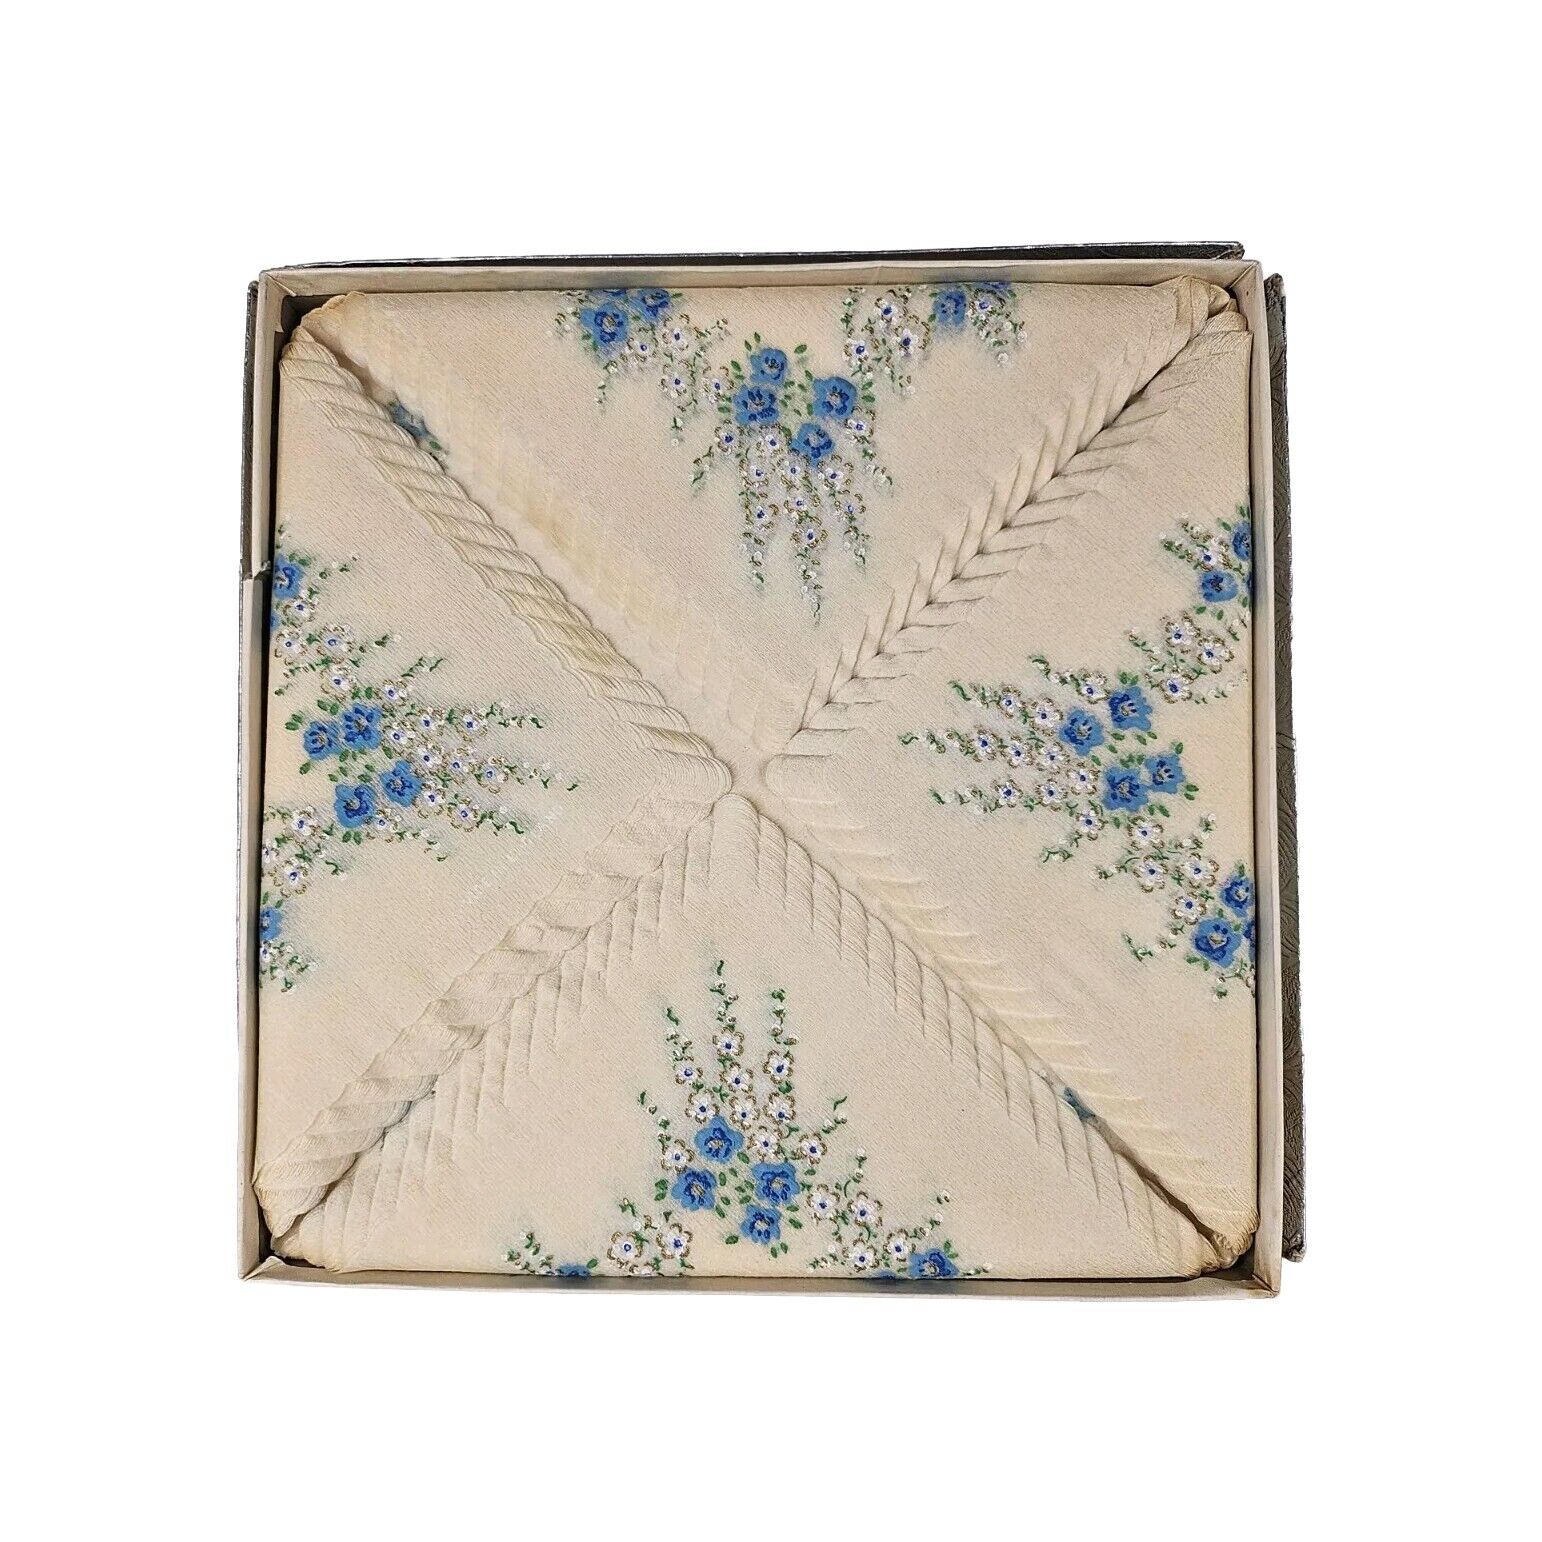 Vintage Blue Floral Tissue Paper Napkin England Great For DIY, Scrapbook, Craft